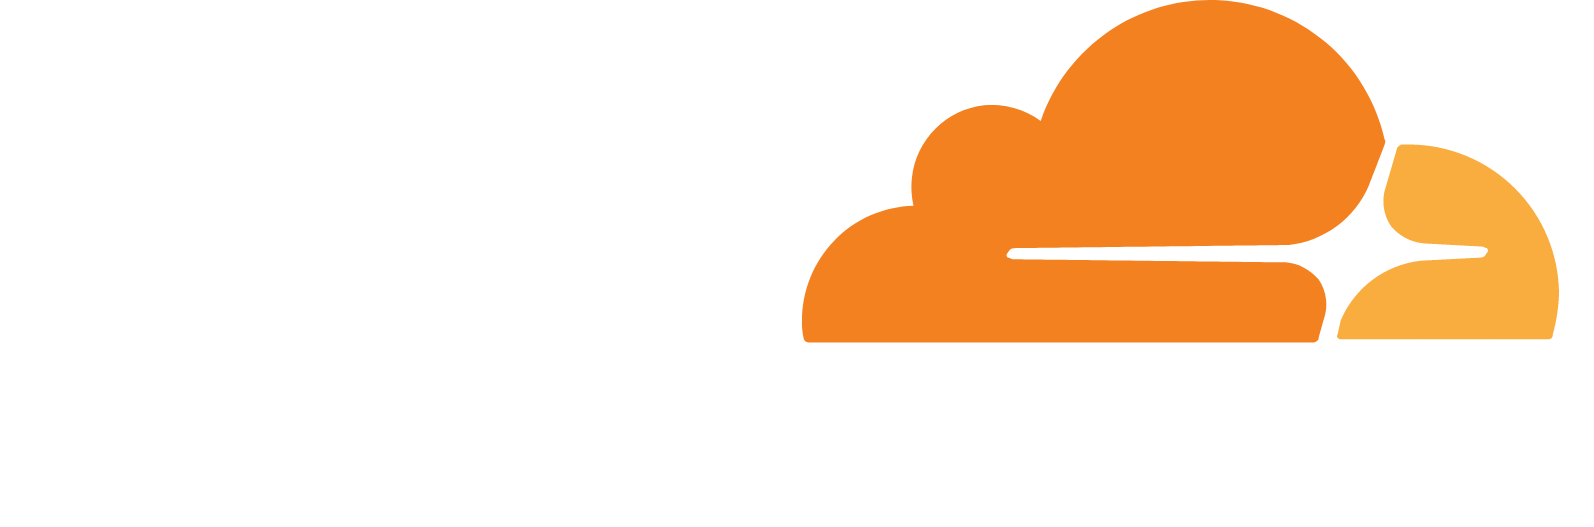 Cloudflare logo grand pour les fonds sombres (PNG transparent)